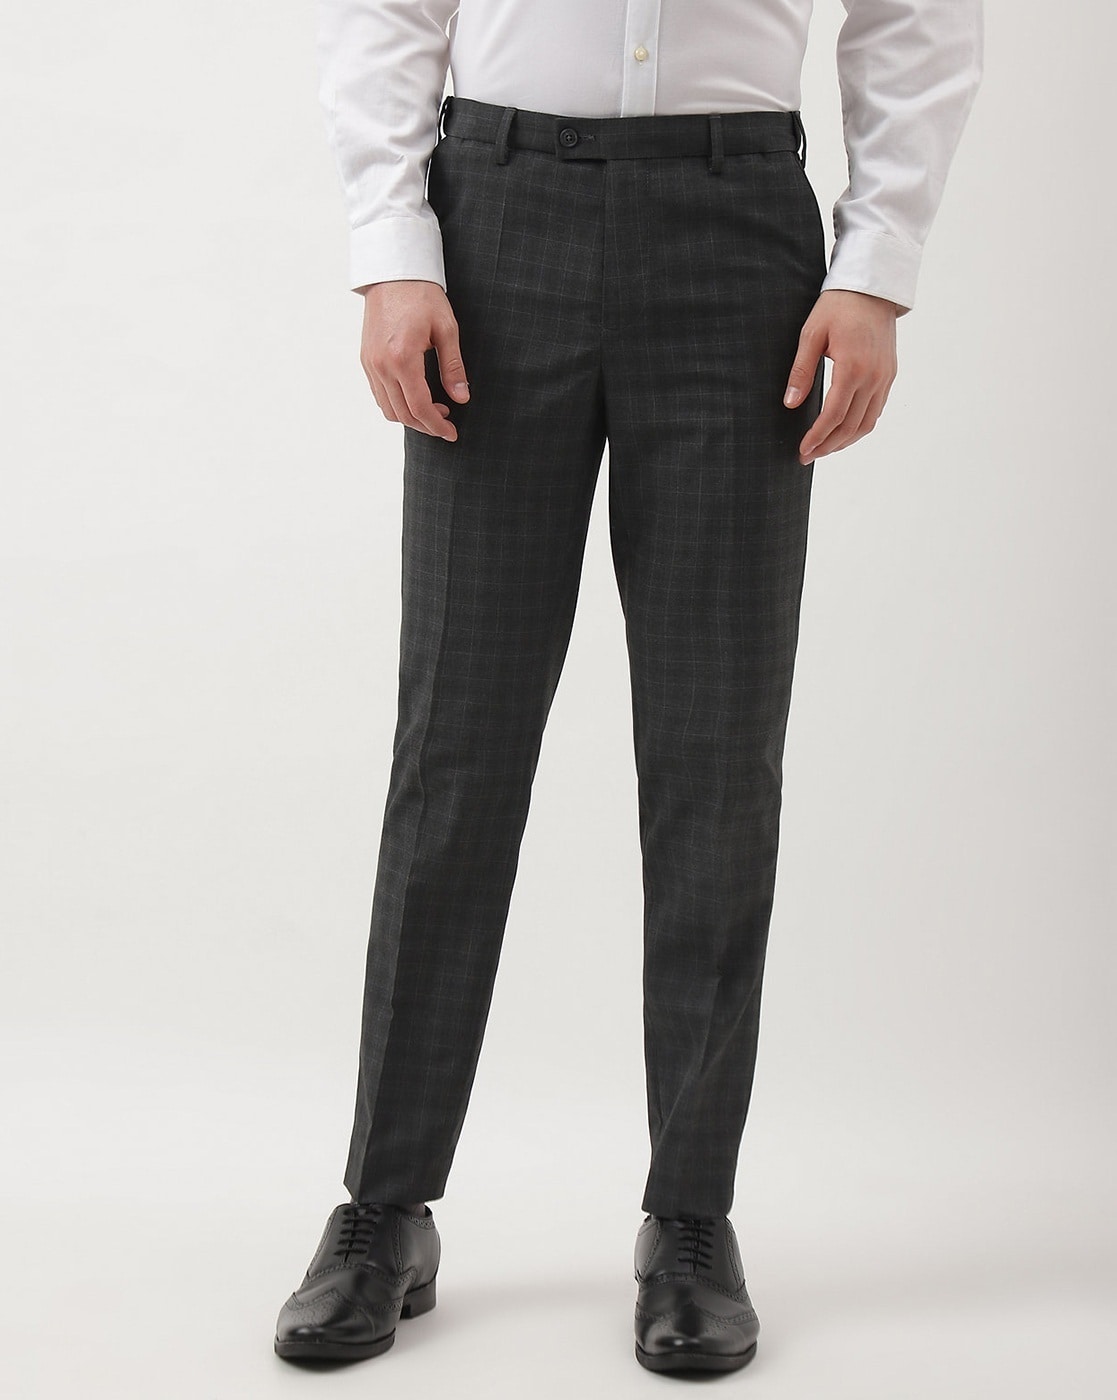 Unique Bargains Formal Plaid Dress Pants for Men's Slim Fit Business Office  Checked Suit Trousers